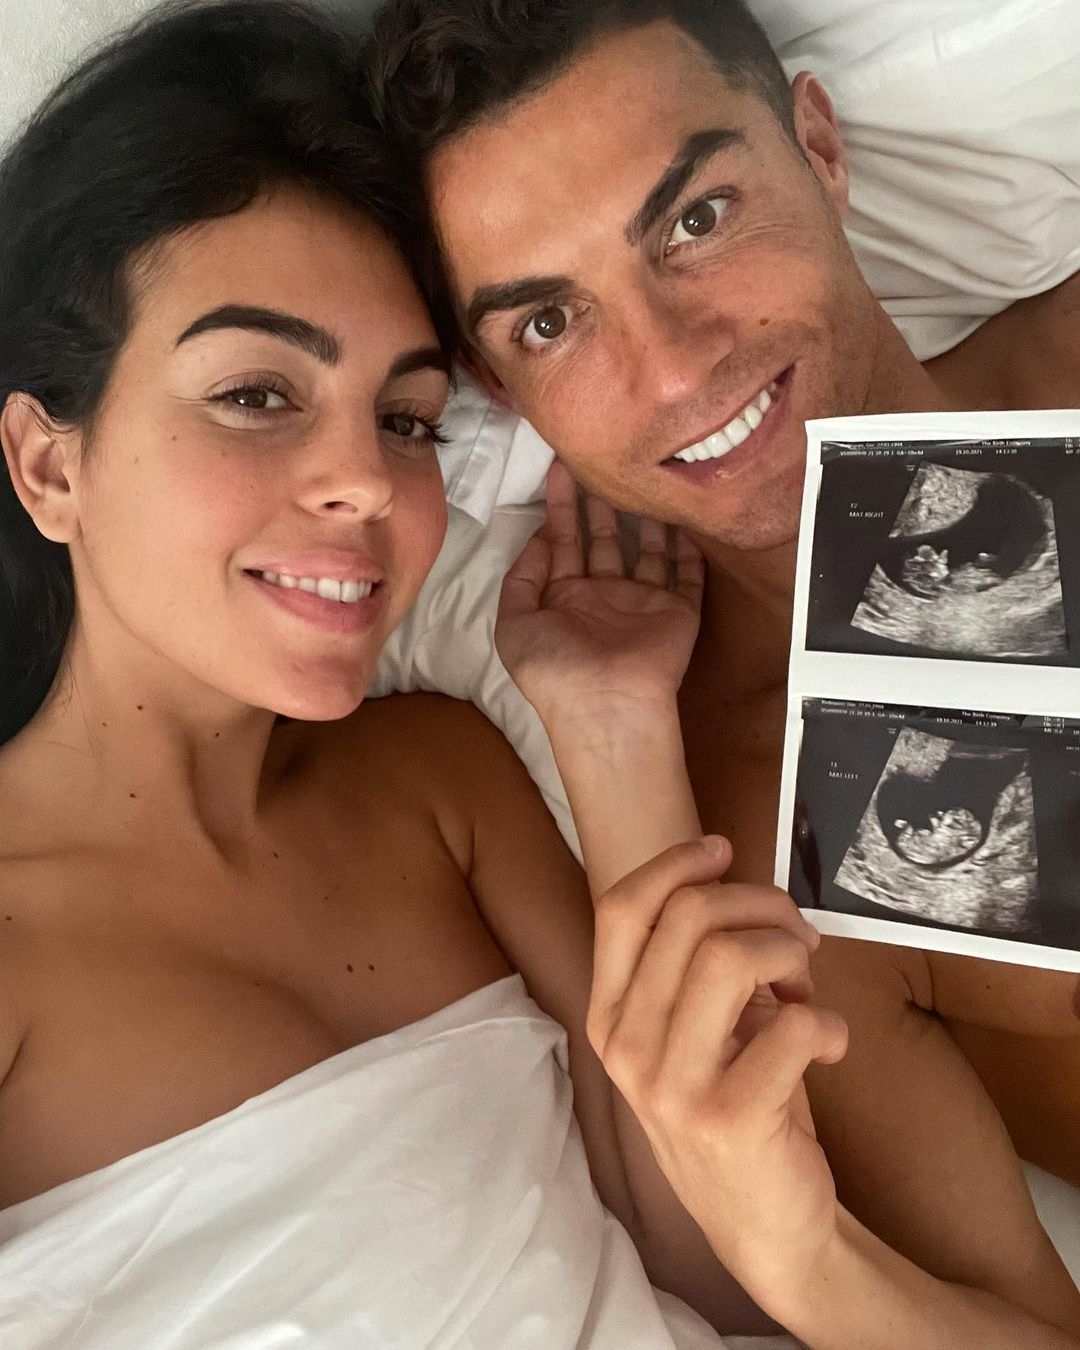 Криштиану Роналду в пятый раз станет отцом: футболист и его девушка ждут близнецов - фото №1